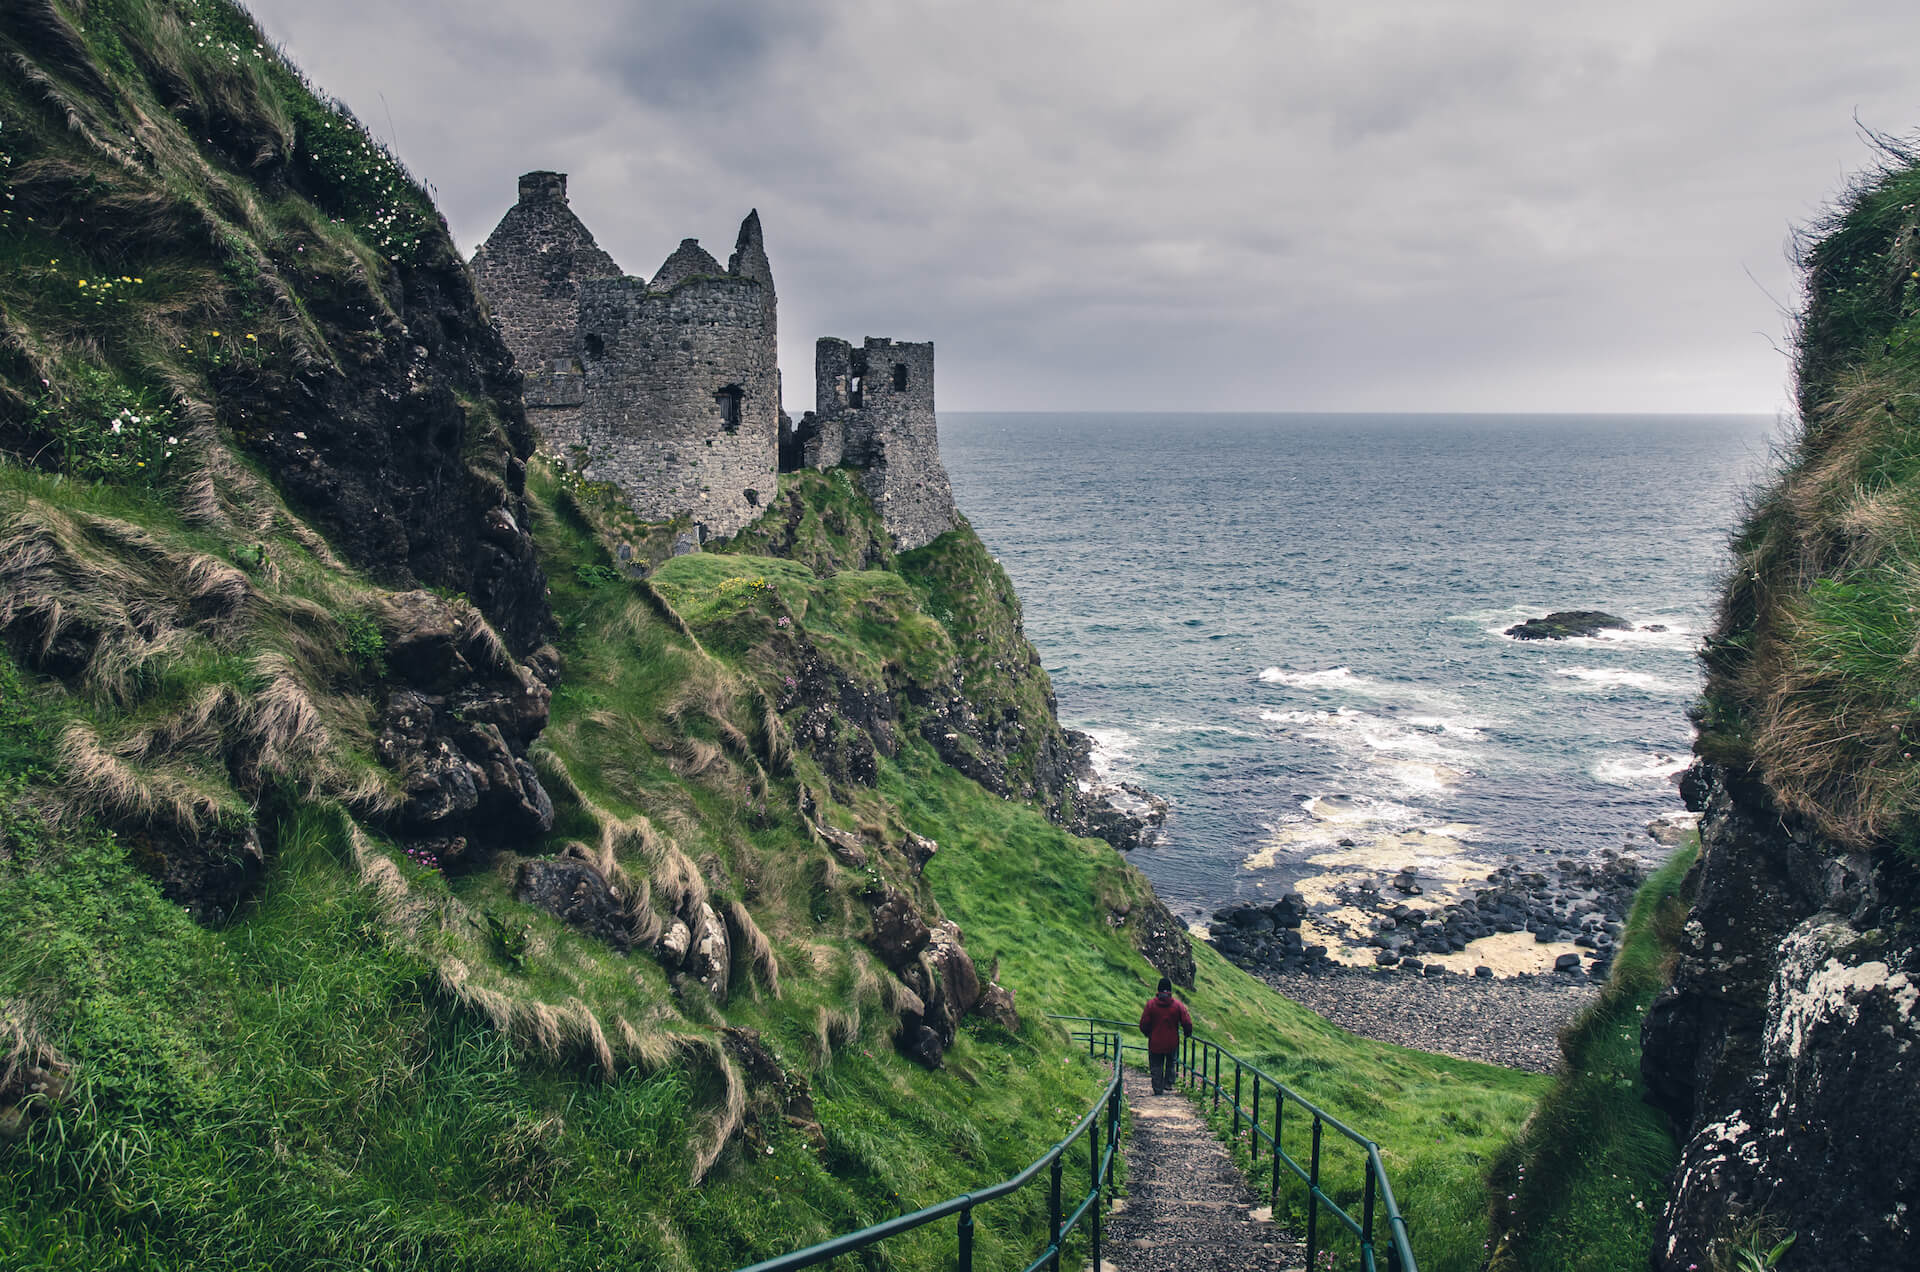 Medieval castle on Ireland’s coast